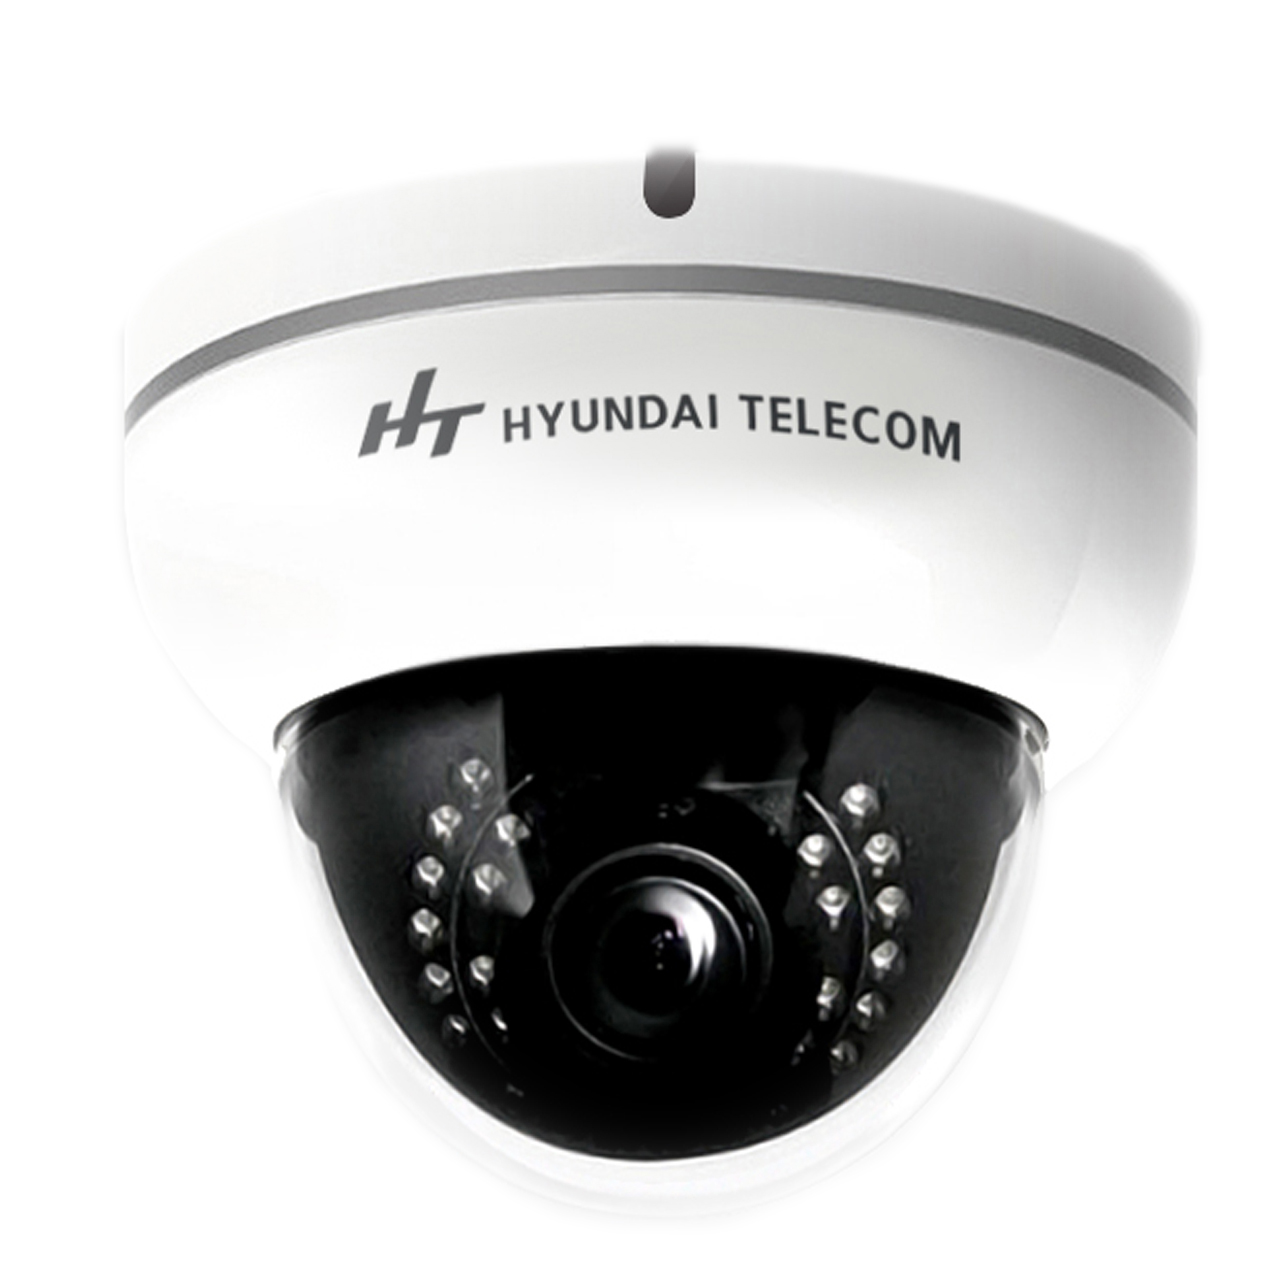 دوربین مداربسته هیوندای تلکام مدل AHD HS30-VTV211-TD30 